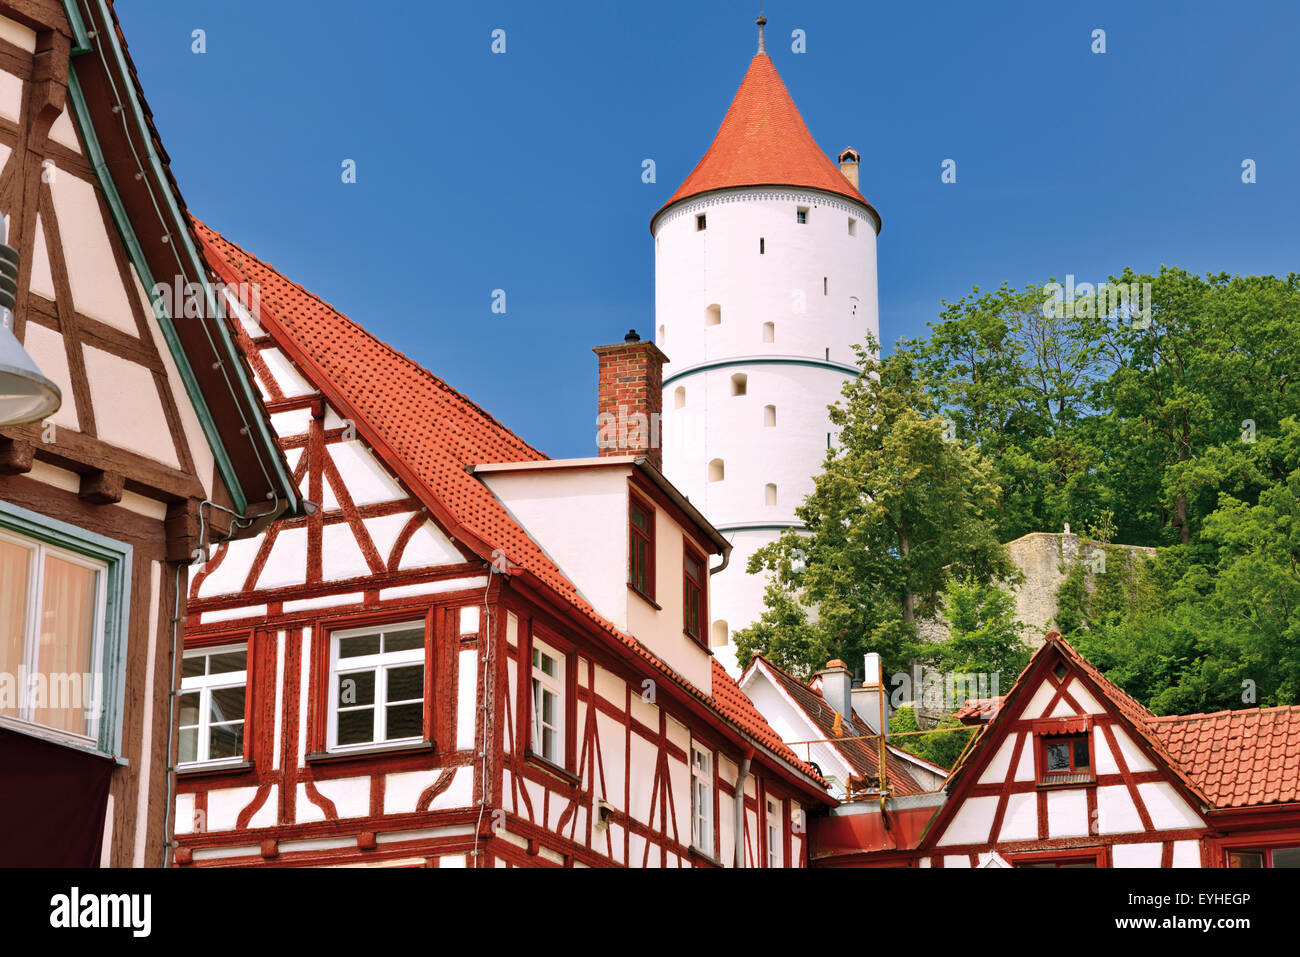 Alemania, en el Estado federado de Baden-Württemberg: detalles arquitectónicos del centro histórico en Biberach an der Riss Foto de stock